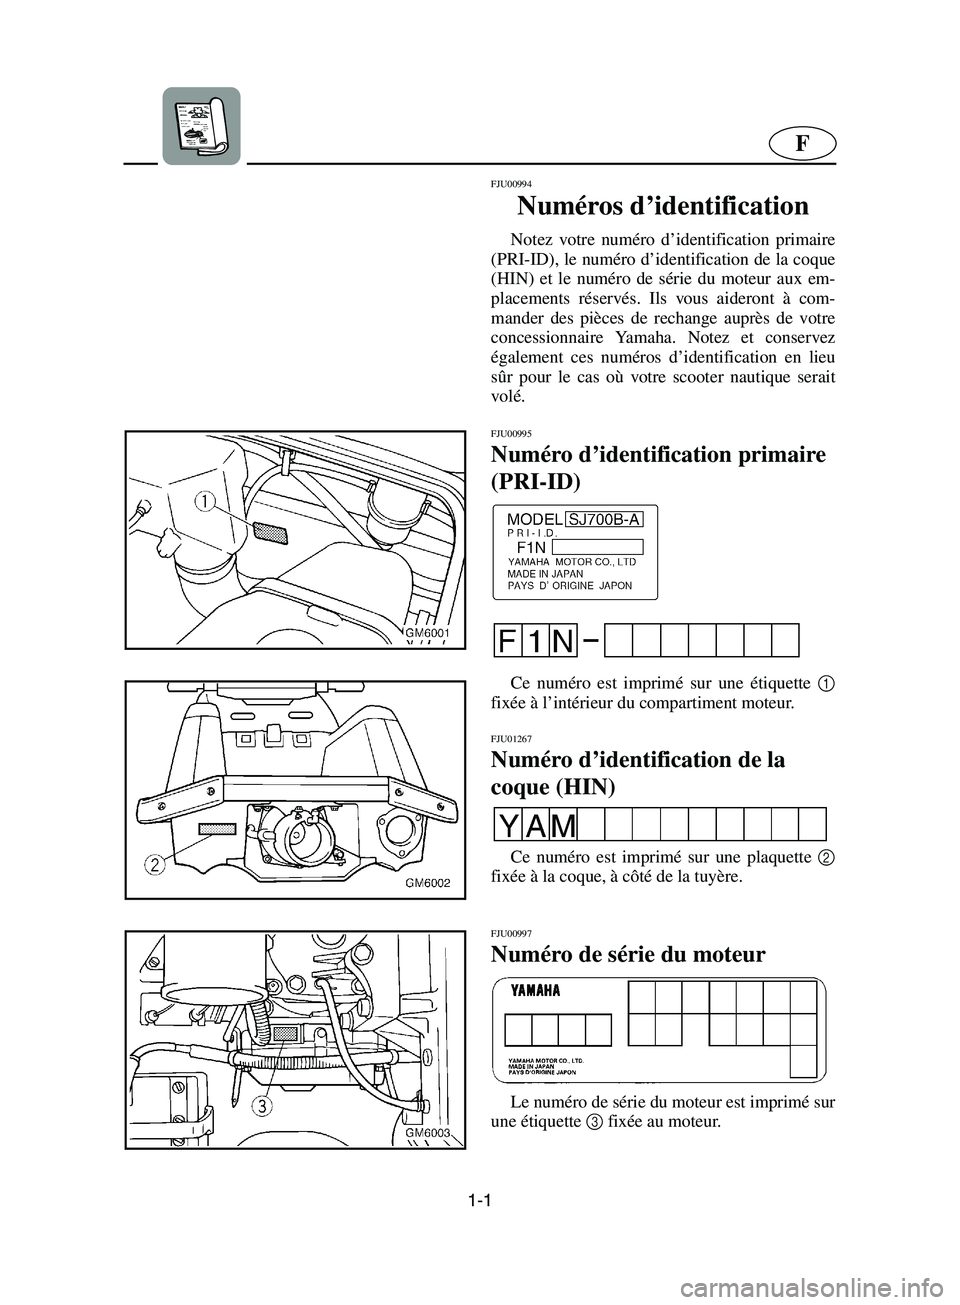 YAMAHA SUPERJET 2002  Notices Demploi (in French) 1-1
F
FJU00994 
Numéros d’identification  
Notez votre numéro d’identification primaire
(PRI-ID), le numéro d’identification de la coque
(HIN) et le numéro de série du moteur aux em-
placem